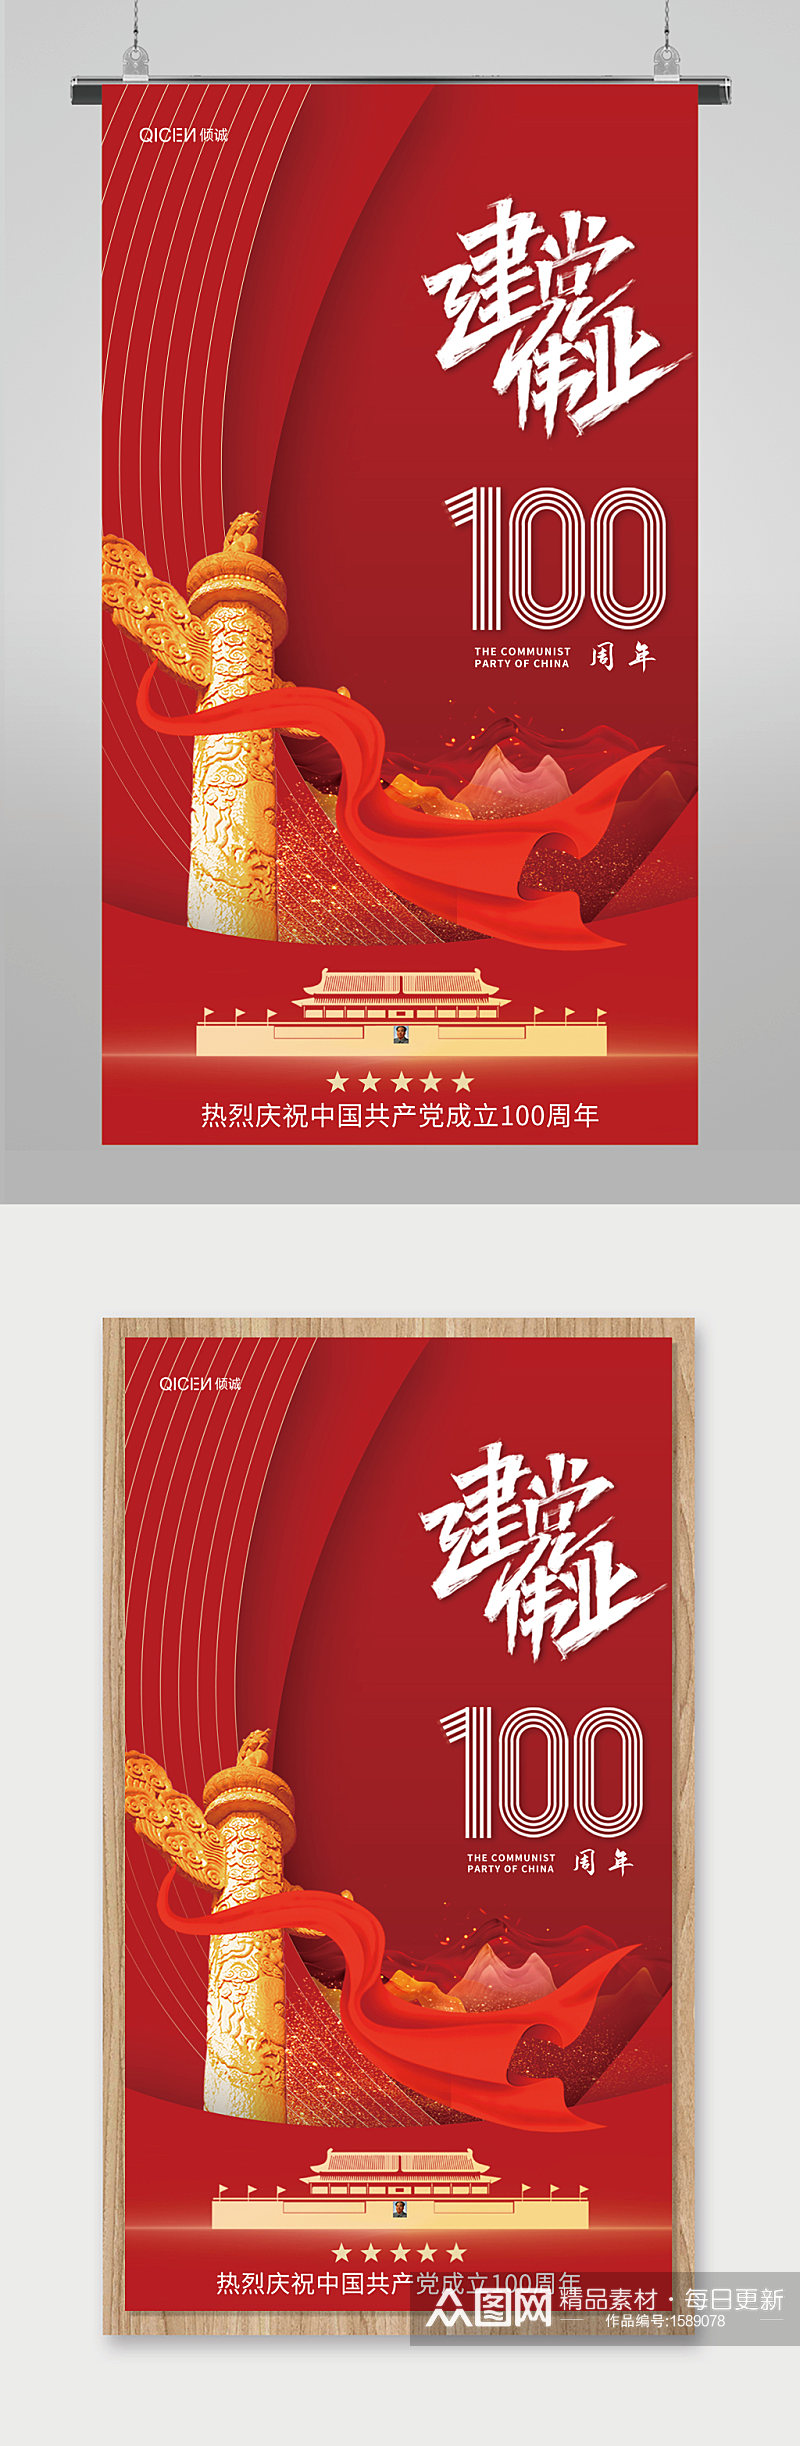 高端大红2021建党100周年宣传海报素材